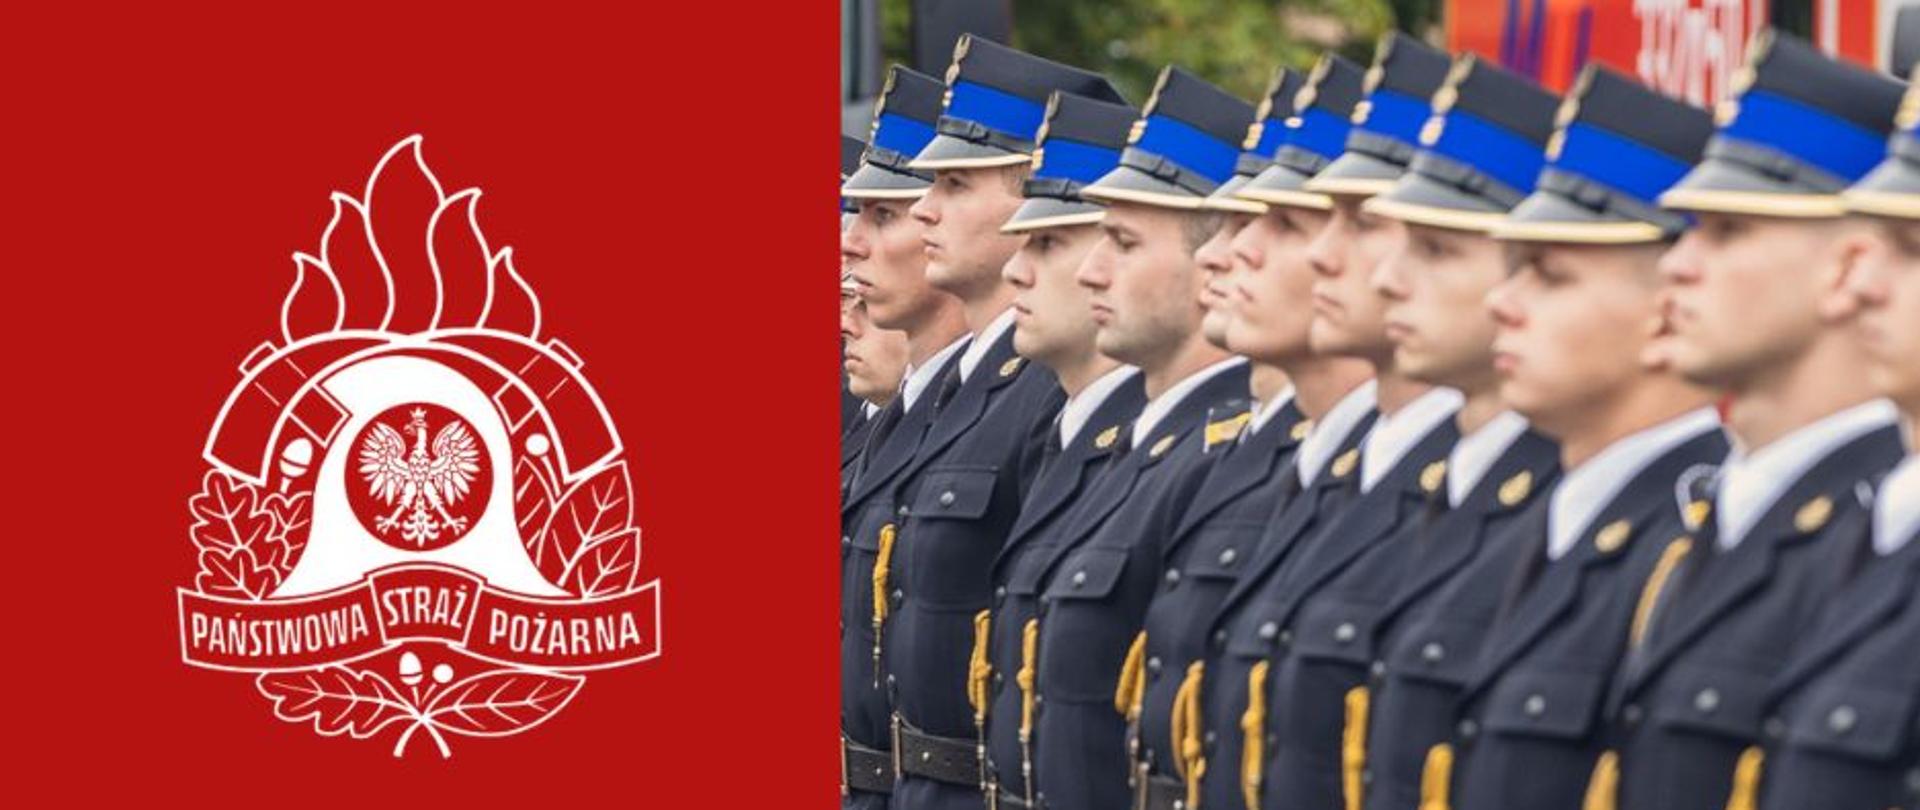 Po lewej stronie na czerwonym tle logo PSP, po prawo w szeregu są strażacy w mundurach galowych